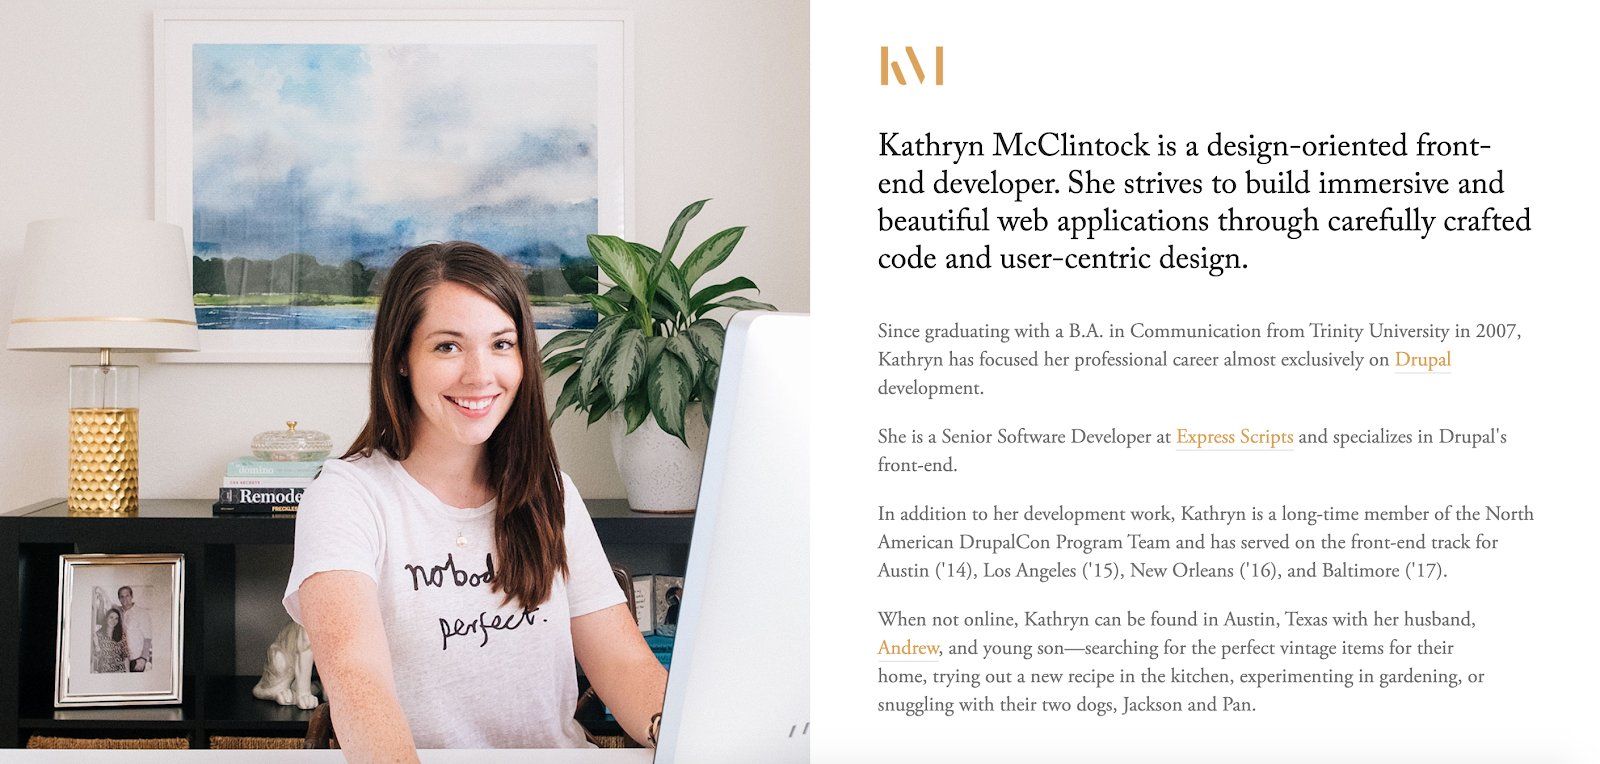 Portafolio de desarrollador web de Kathryn McClintock